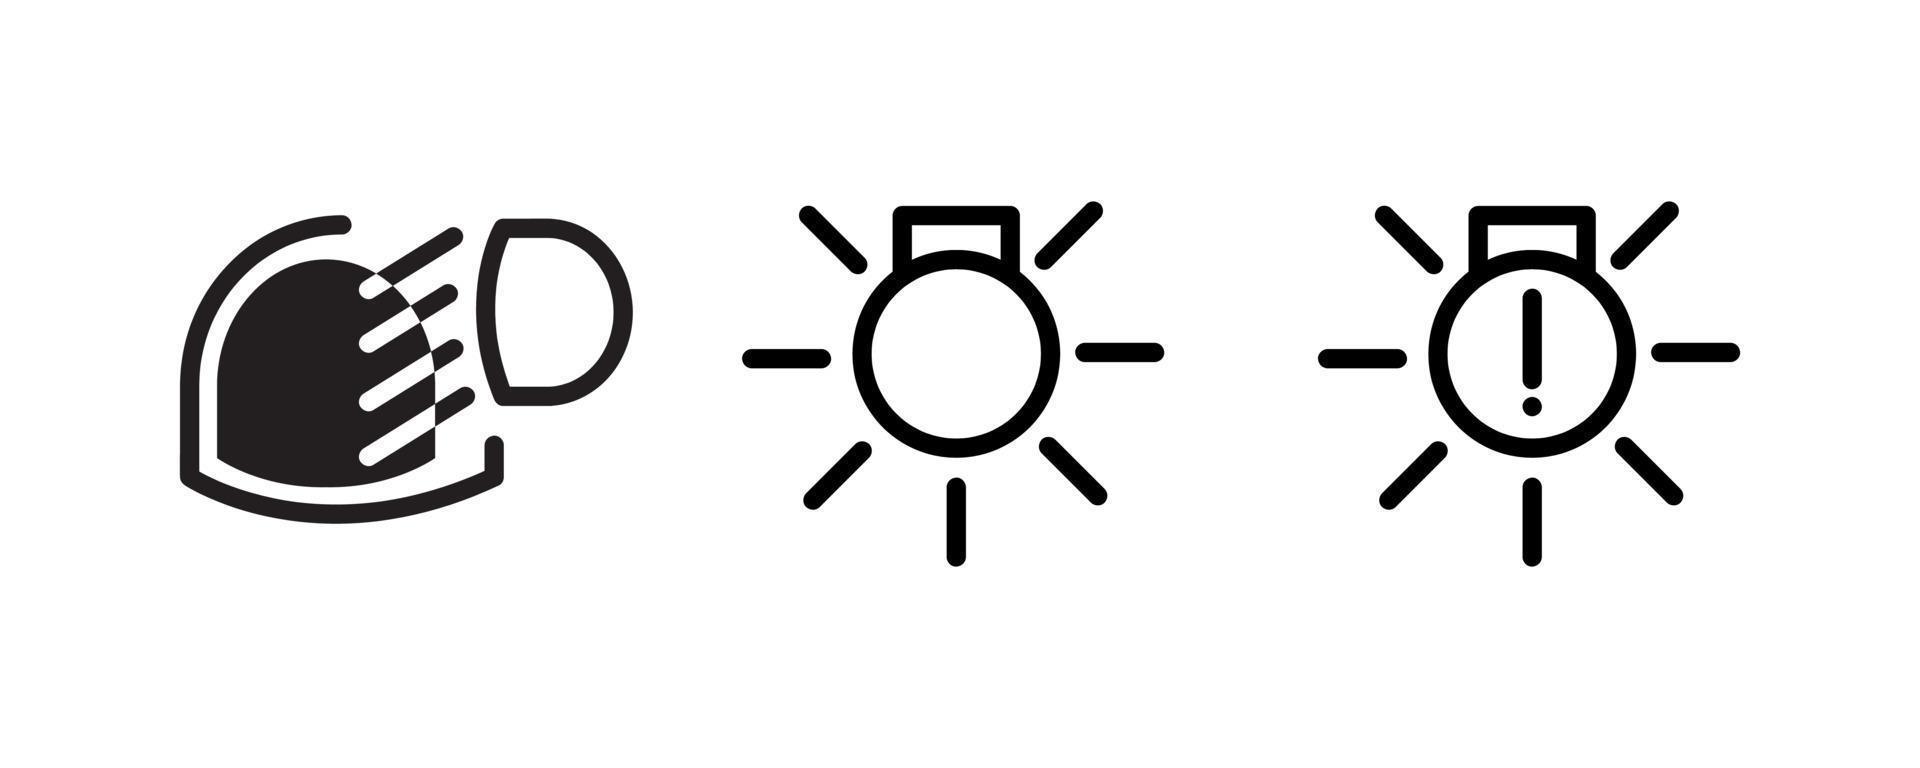 Vektor-Icons von Fahrzeug-Dashboard-Anzeigen. Zu diesen Symbolen